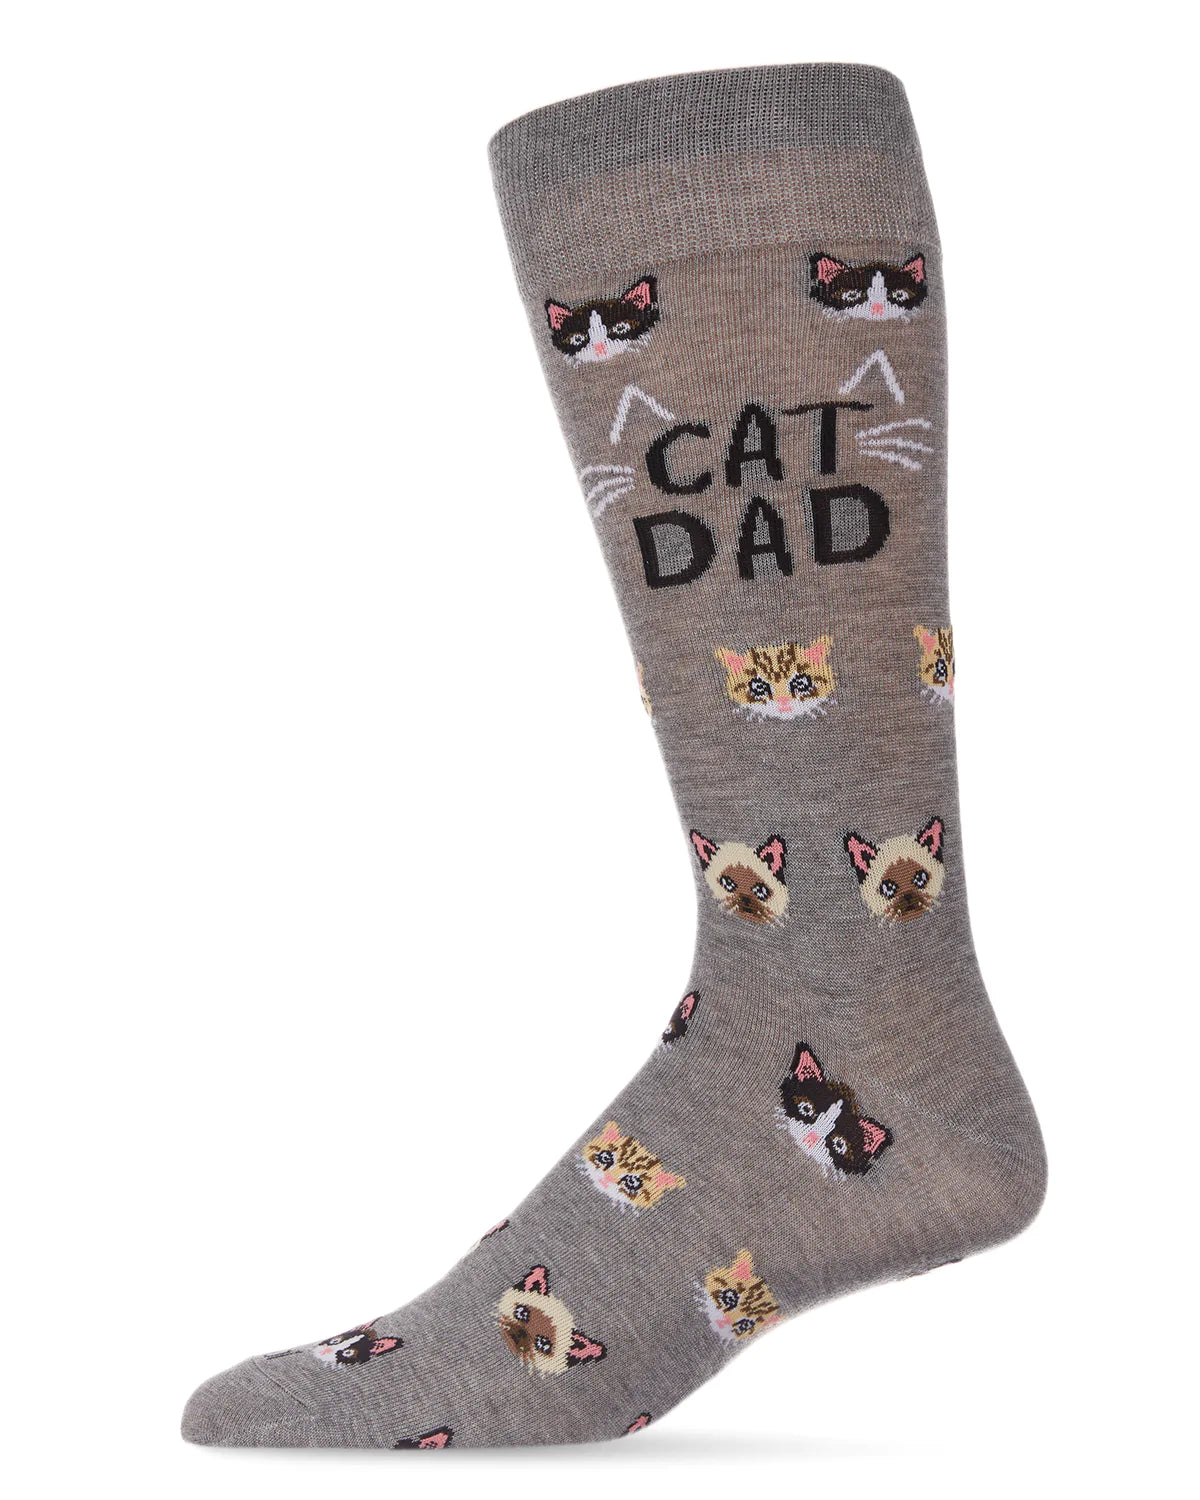 Men's Crew Socks Cat Dad